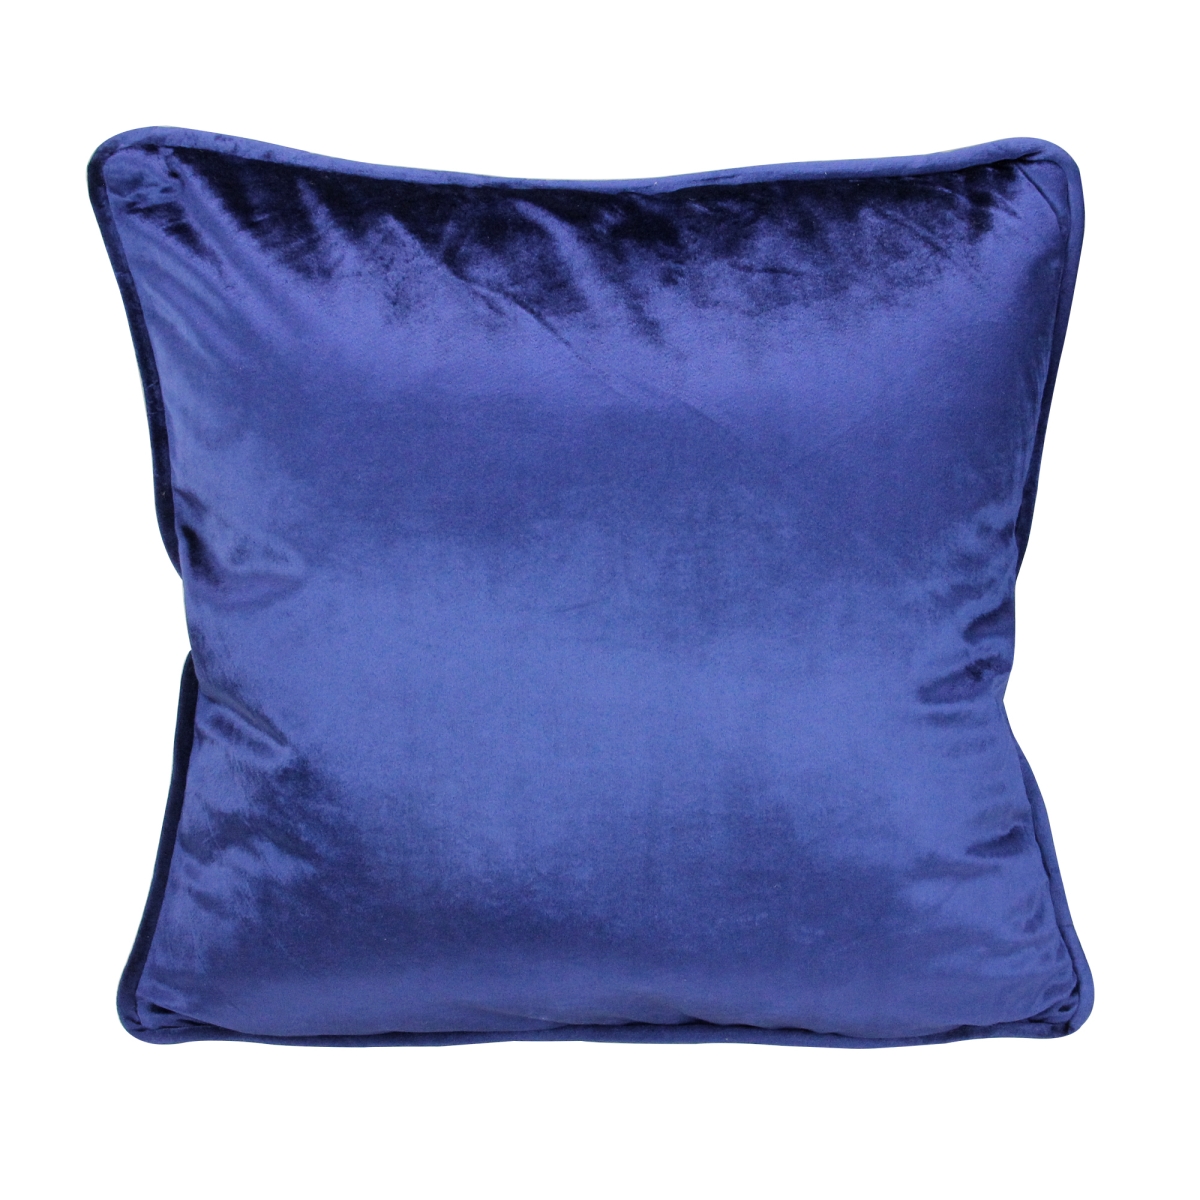 32913579 17 In. Navy Blue Plush Velvet Square Throw Pillow